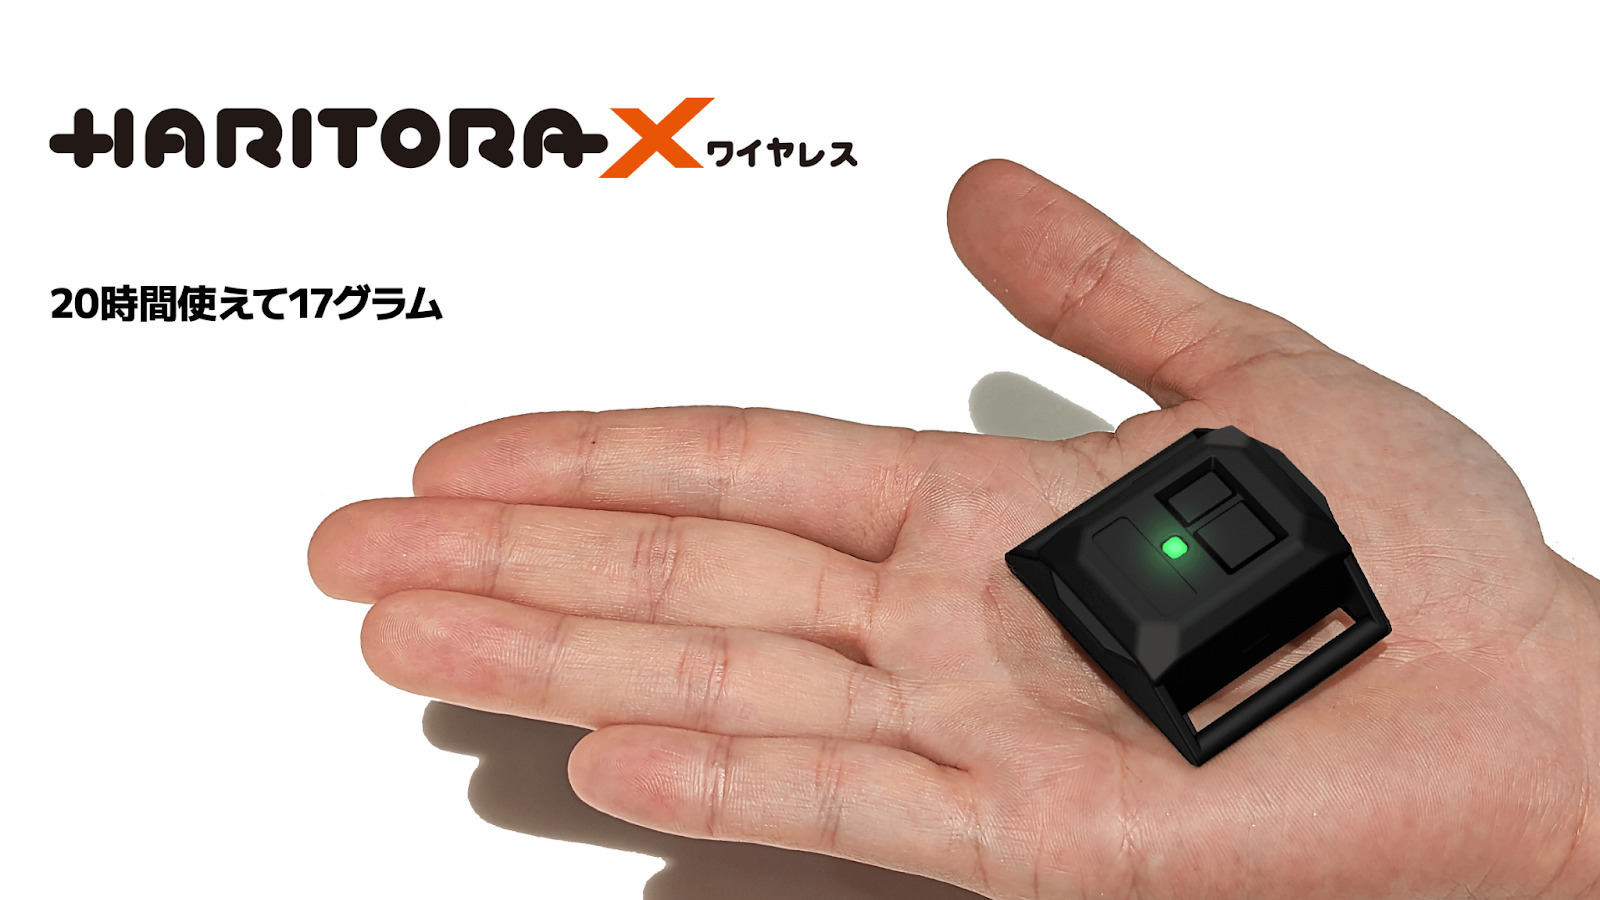 フルトラッキングデバイス「HaritoraX ワイヤレス」発表！ 価格は税込39,999円。より小型で20時間駆動